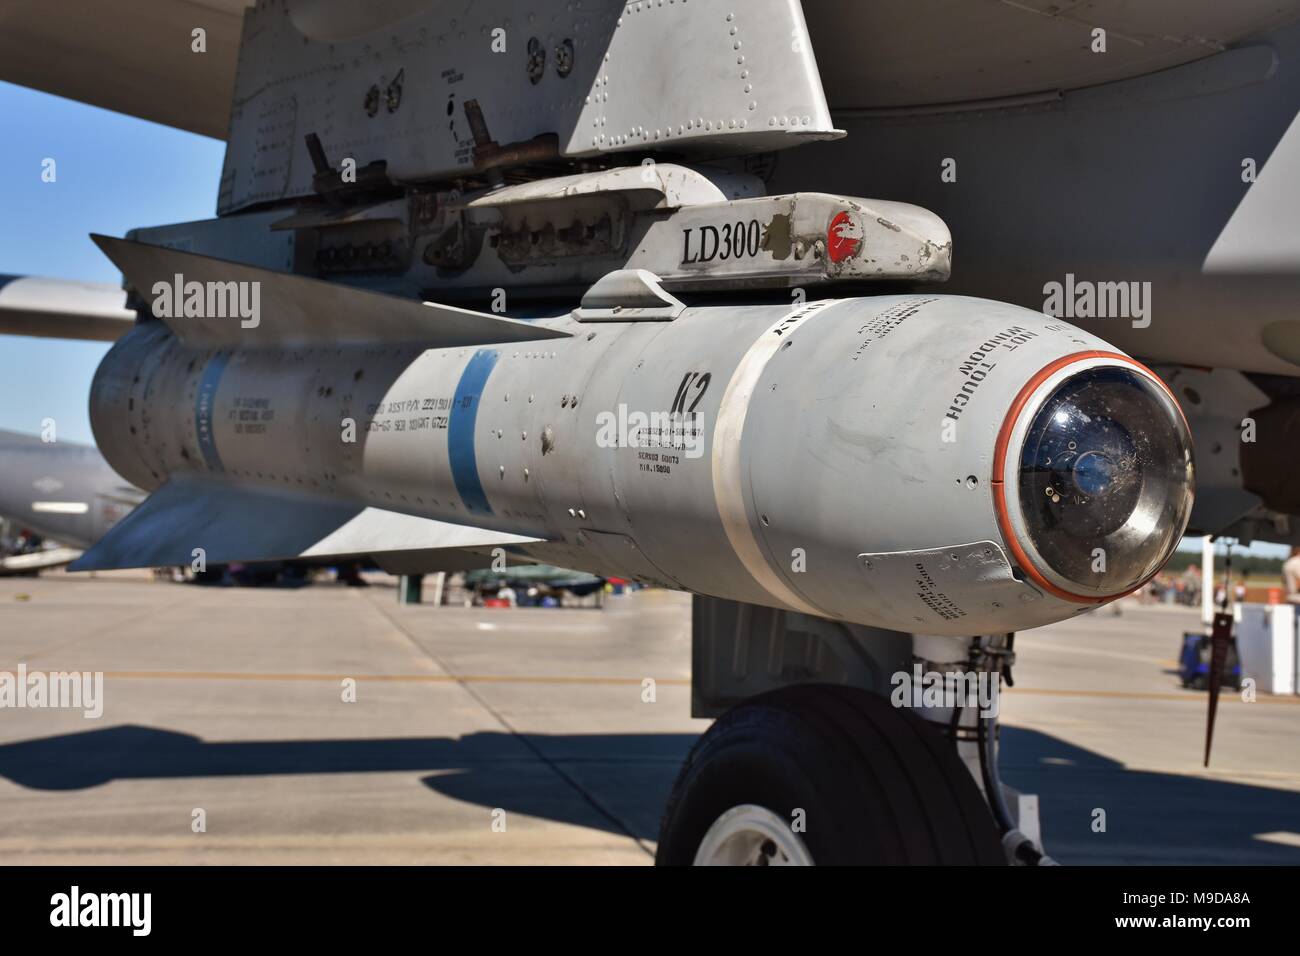 Una Fuerza Aérea Maverick AGM-65 misil en un A-10 Warthog ataque jet. El Maverick es un tierra-aire diseñado para misiles de apoyo aéreo cercano. Foto de stock